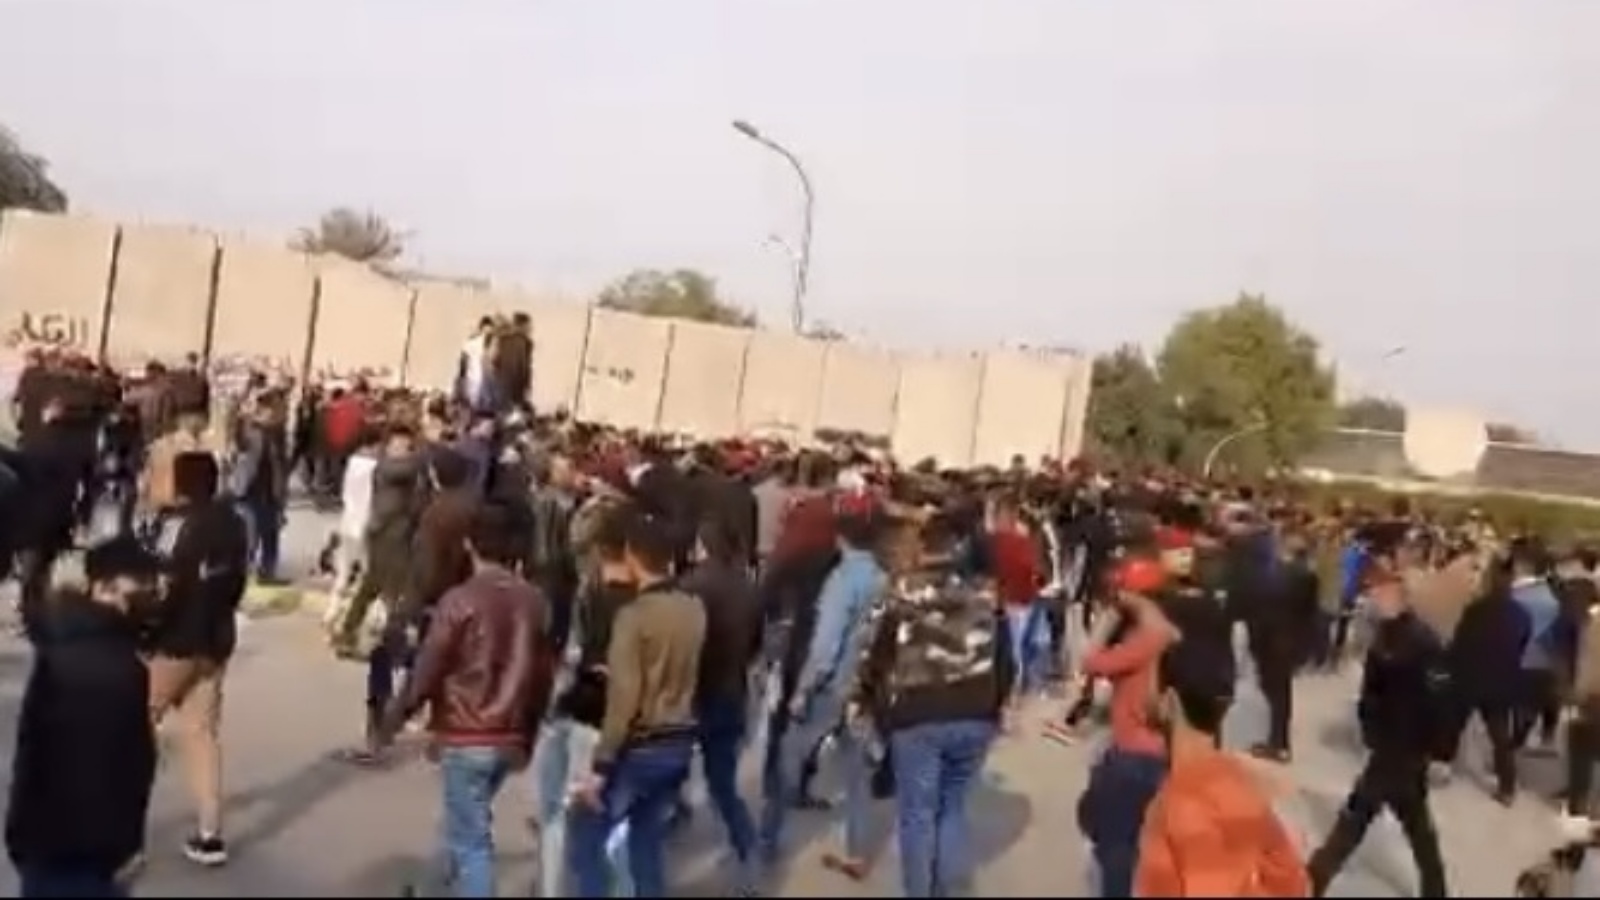 محتجون من أنصار تحالف الفتح الموالي لإيران يتظاهرون أمام بوابات المنطقة الخضراء وسط بغداد ضد نتائج الانتخابات. الجمعة 17 كانون الأول/ ديسمبر2021 (تويتر)